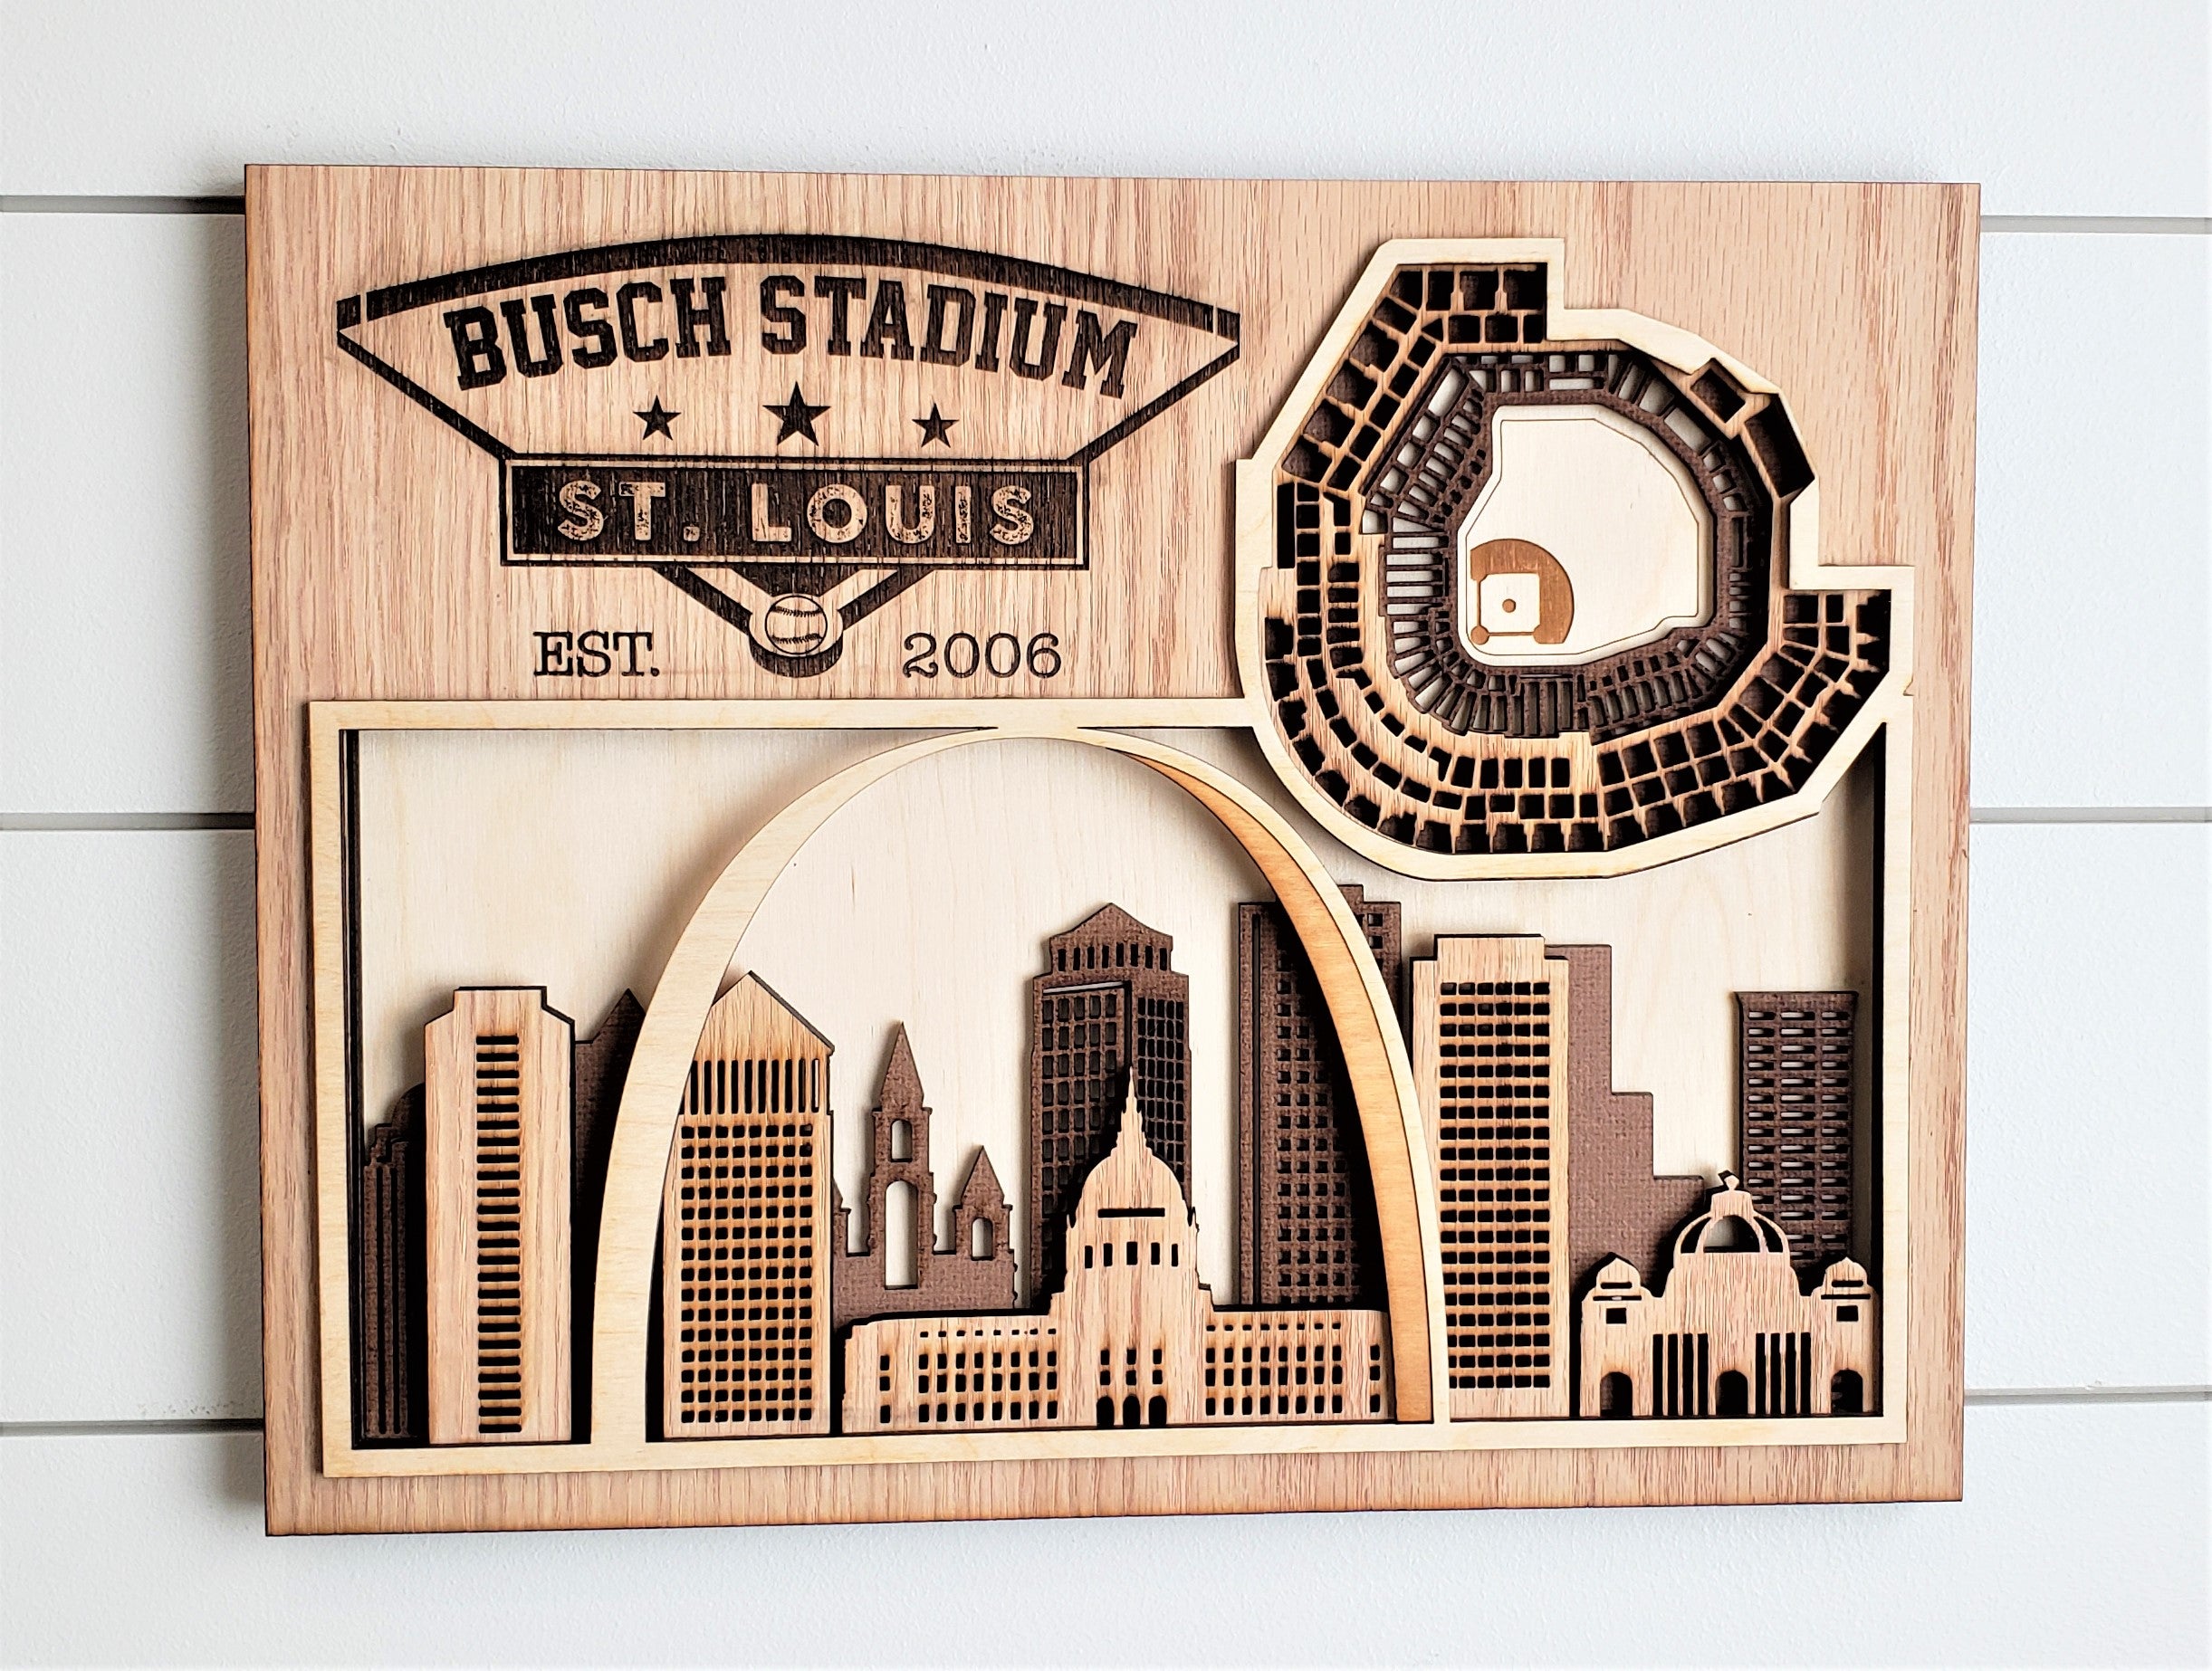 Busch Stadium - Home of the St. Louis Cardinals